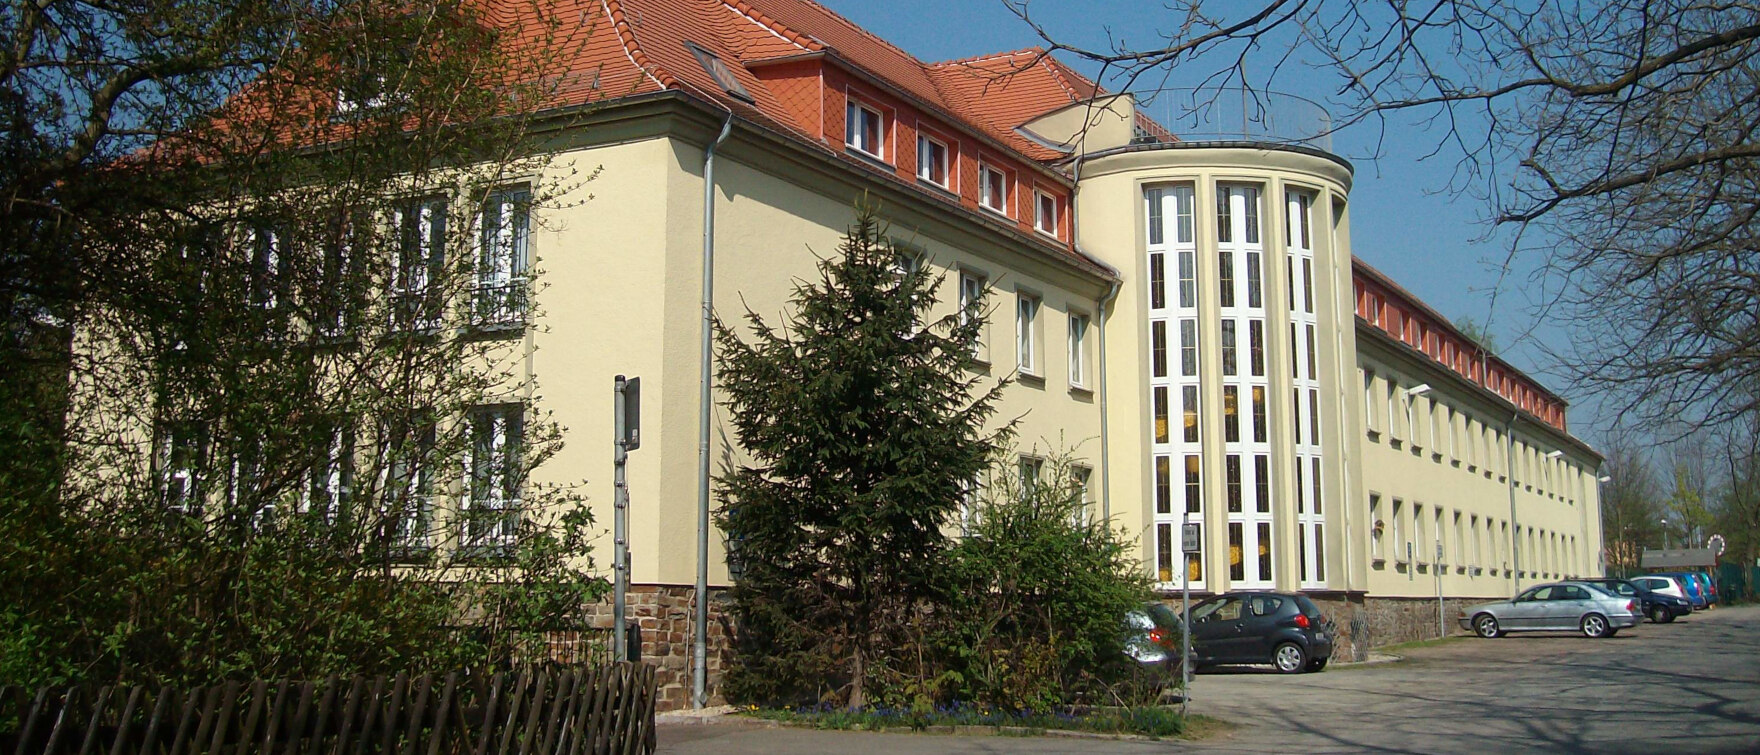 Hauptinhalt Förder- und Fachbildungszentrum Zwickau mit Fachschule für Landwirtschaft